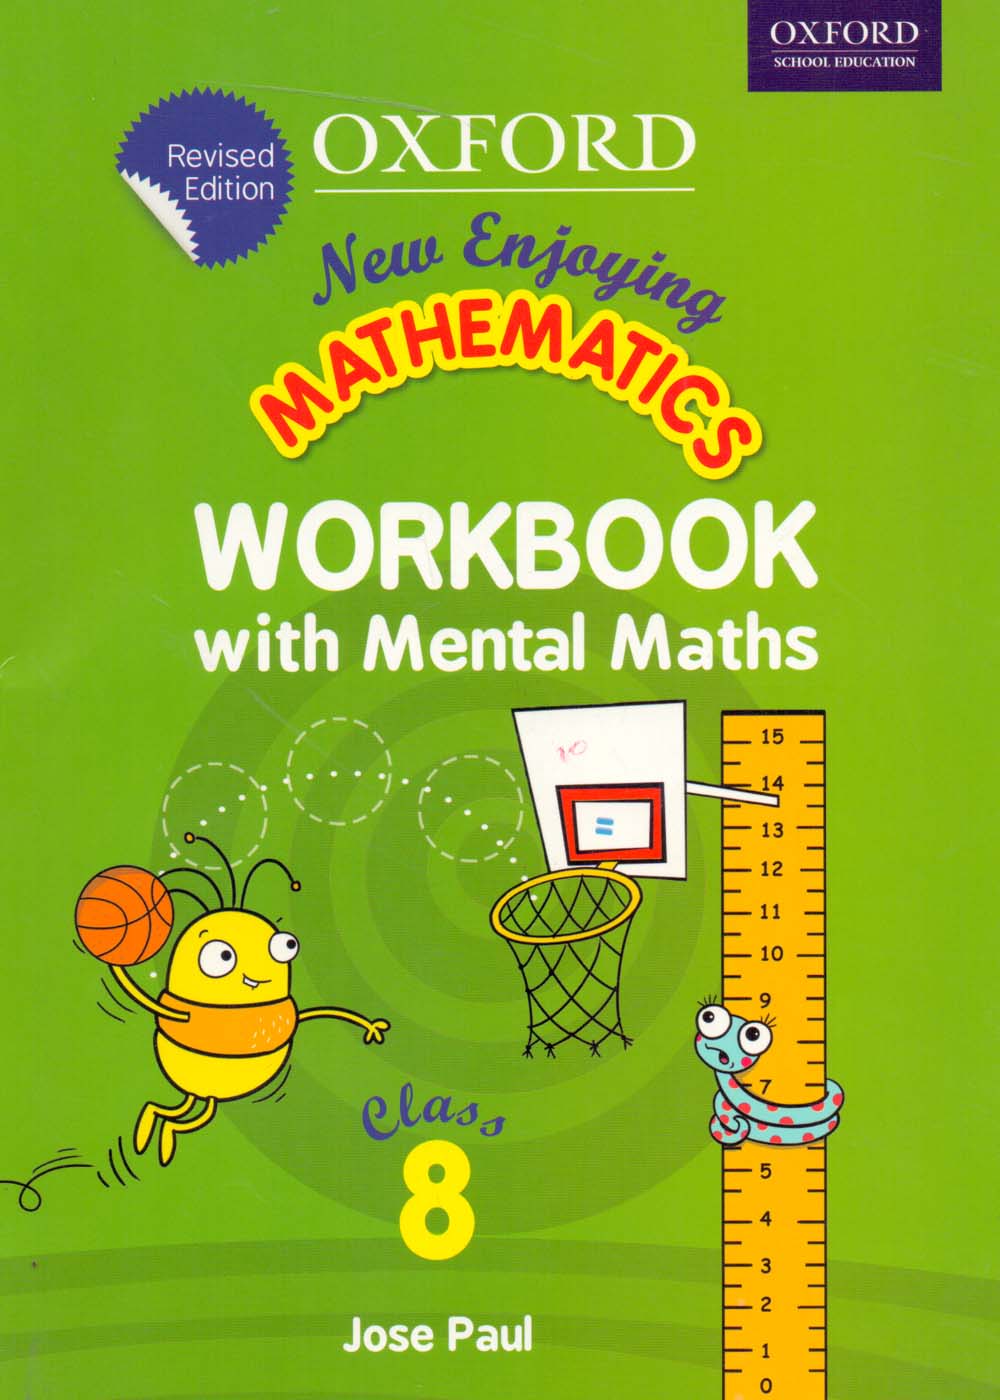 Oxford New Enjoying Mathematics Workbook with Mental Maths Class VIII